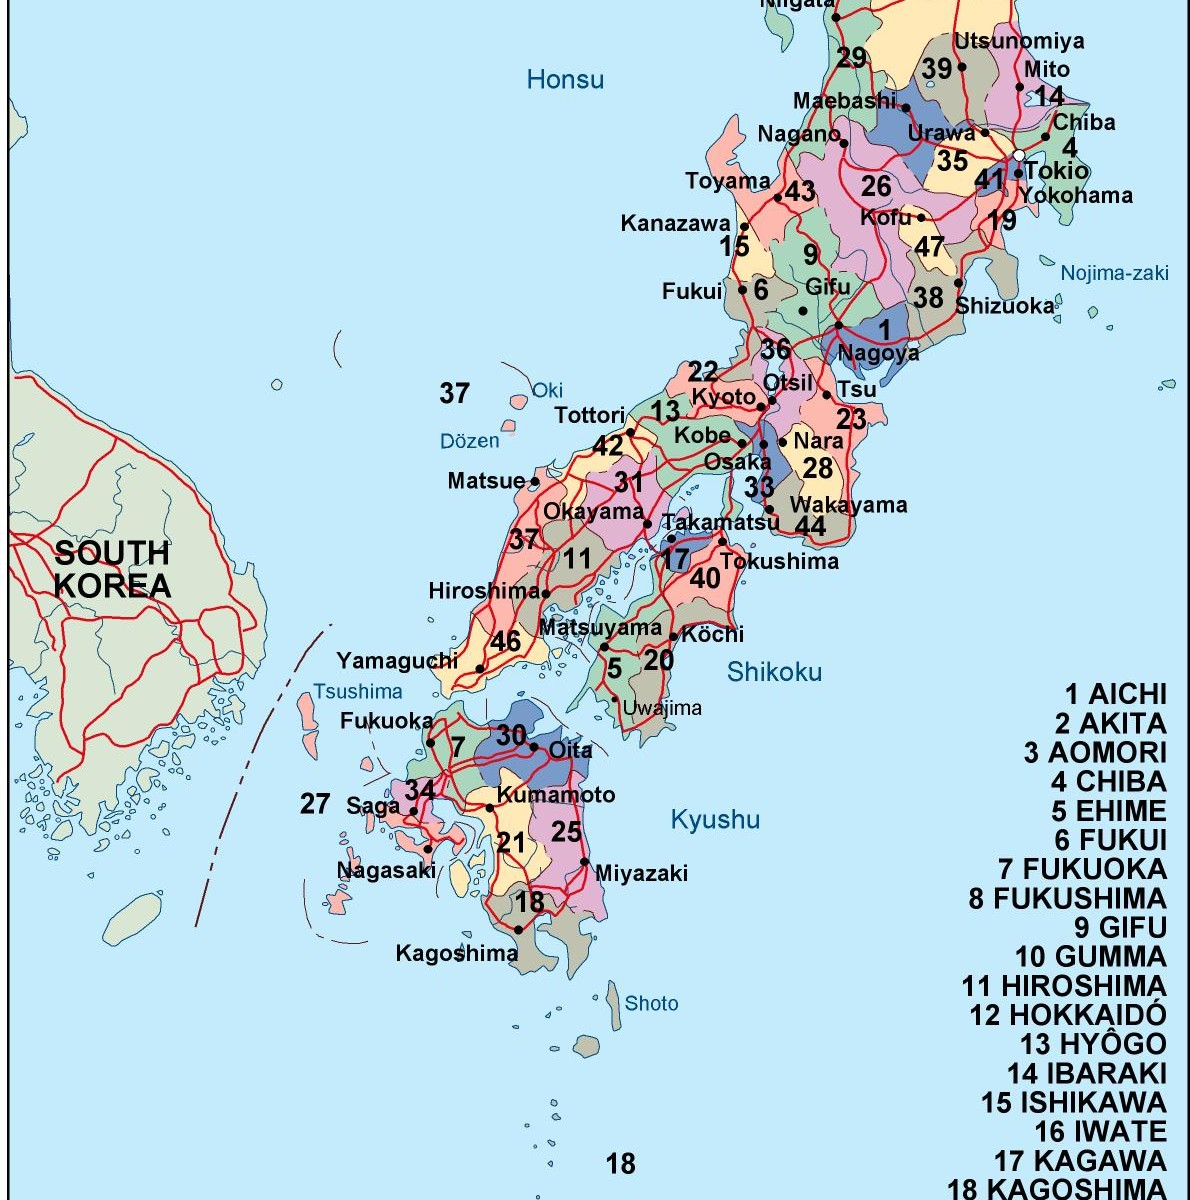 Mapa Politico De Japon Images